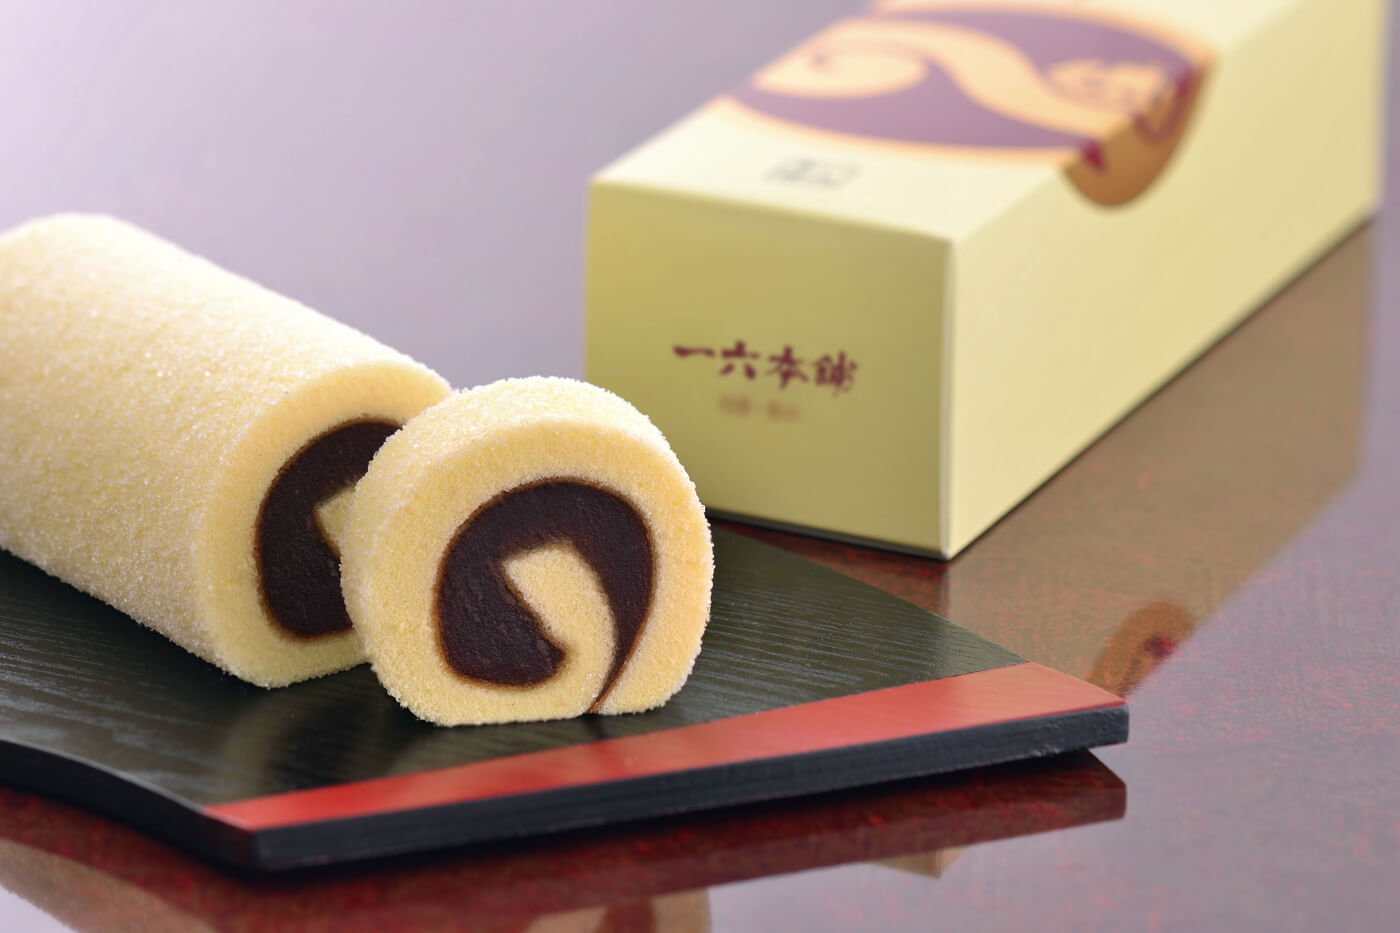 和洋菓子の製造販売を行う一六本舗を代表する「一六タルト」。愛媛県産の柚子と白双糖を加えたこしあんをやわらかなスポンジで巻いた伝統の菓子。